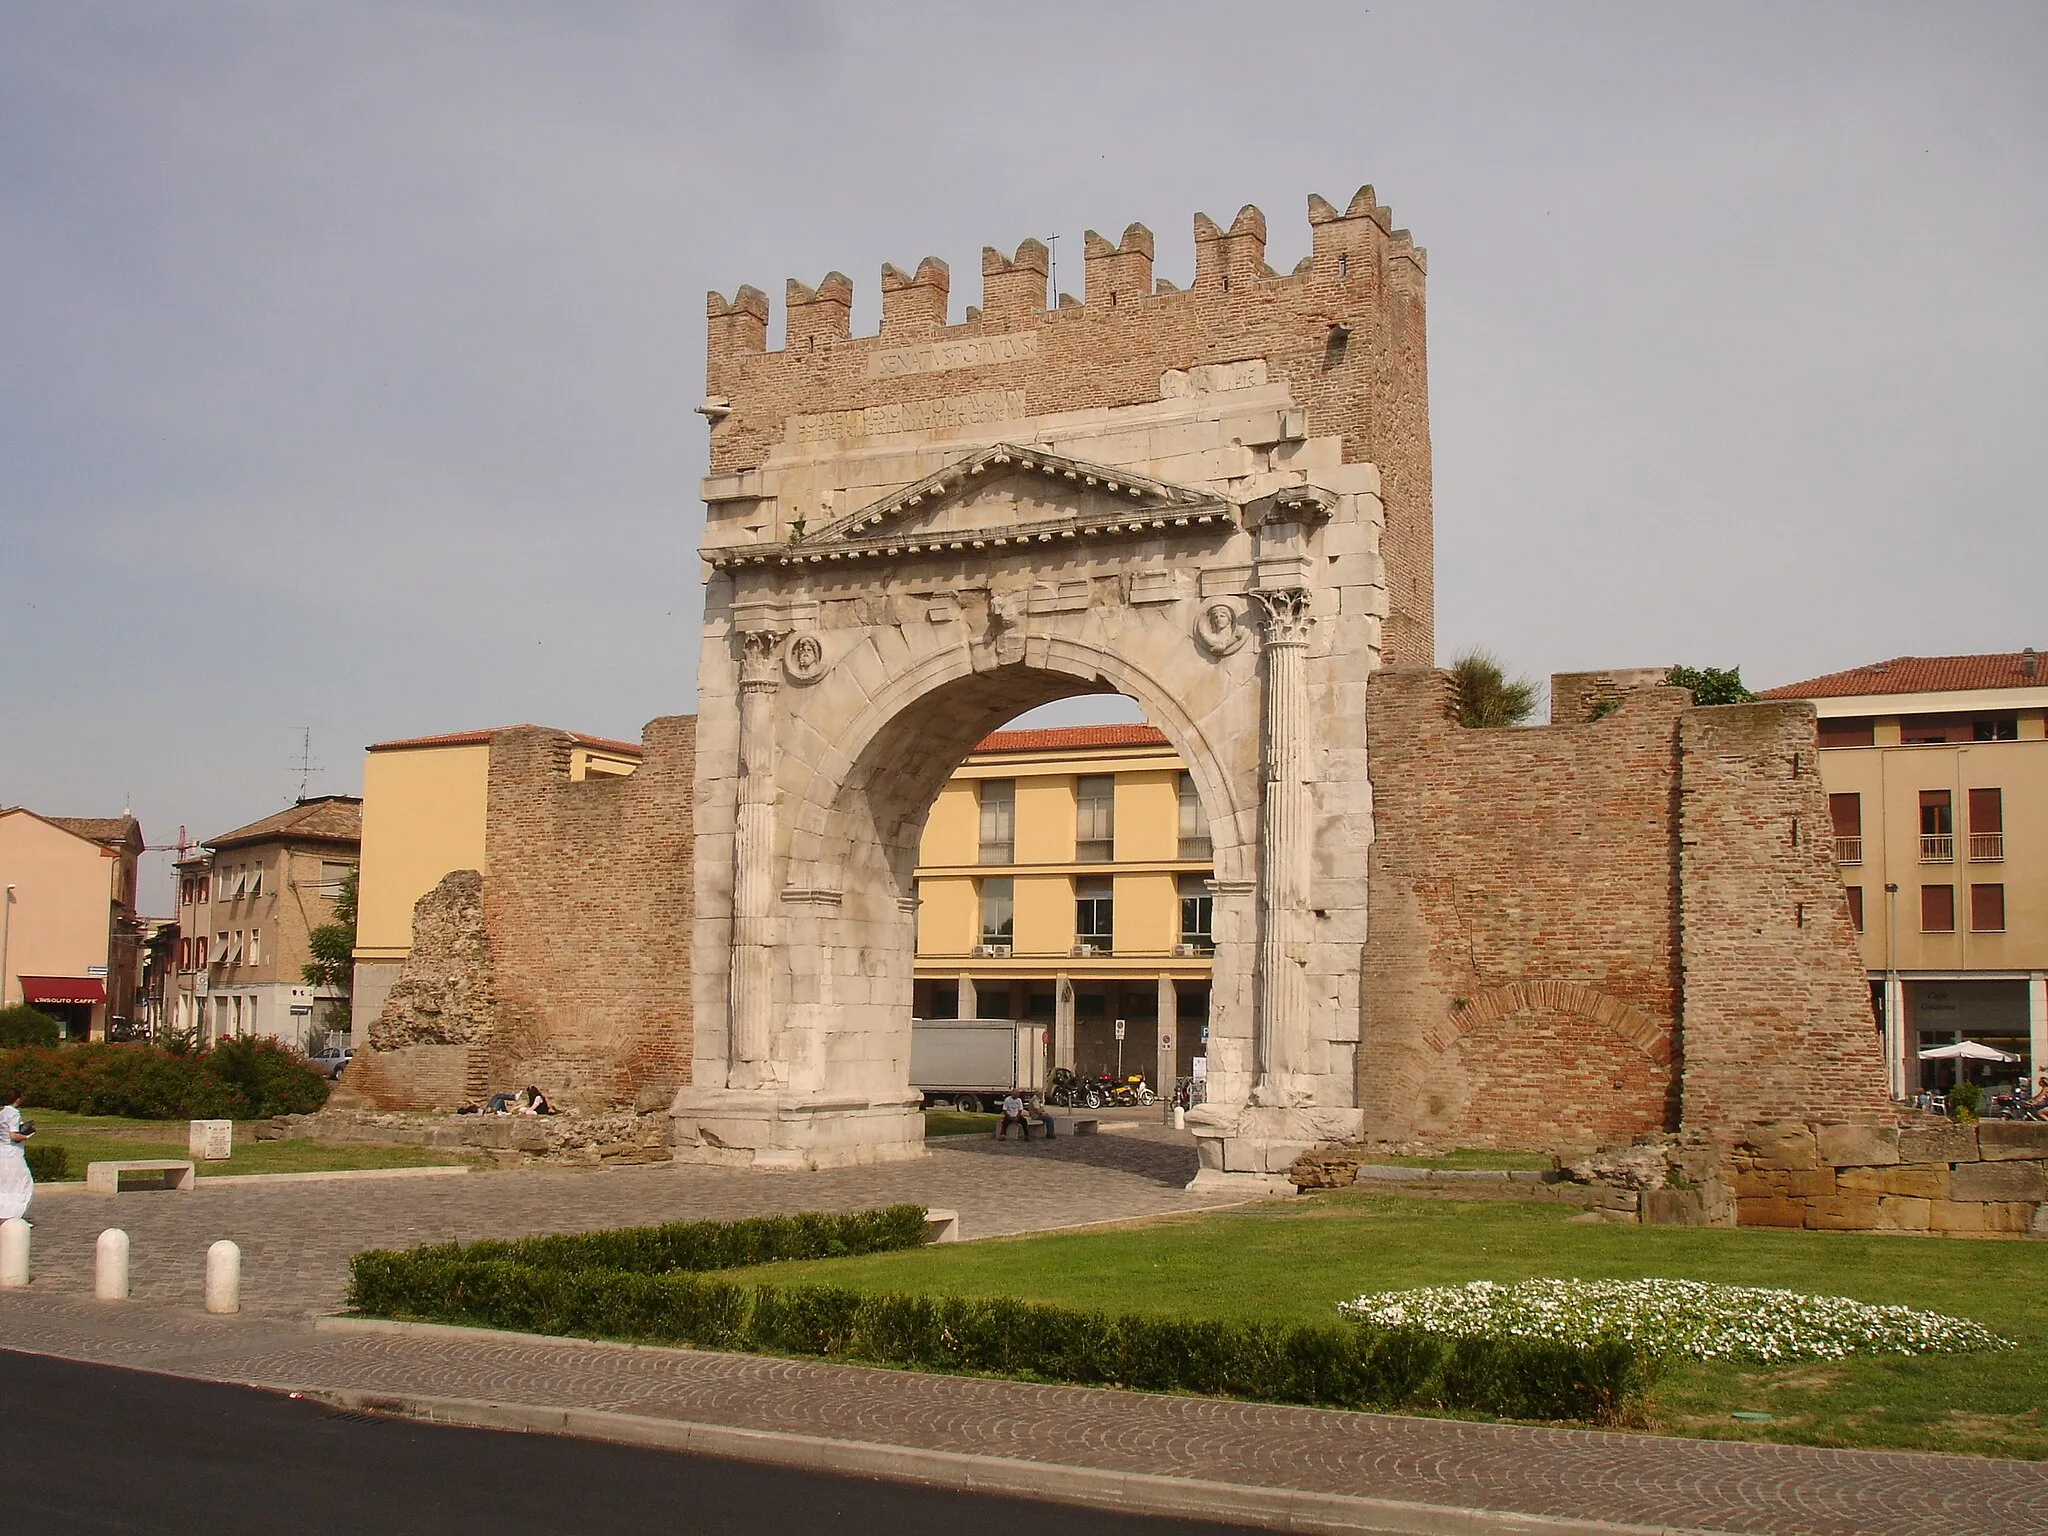 Image of Castelfranco Emilia